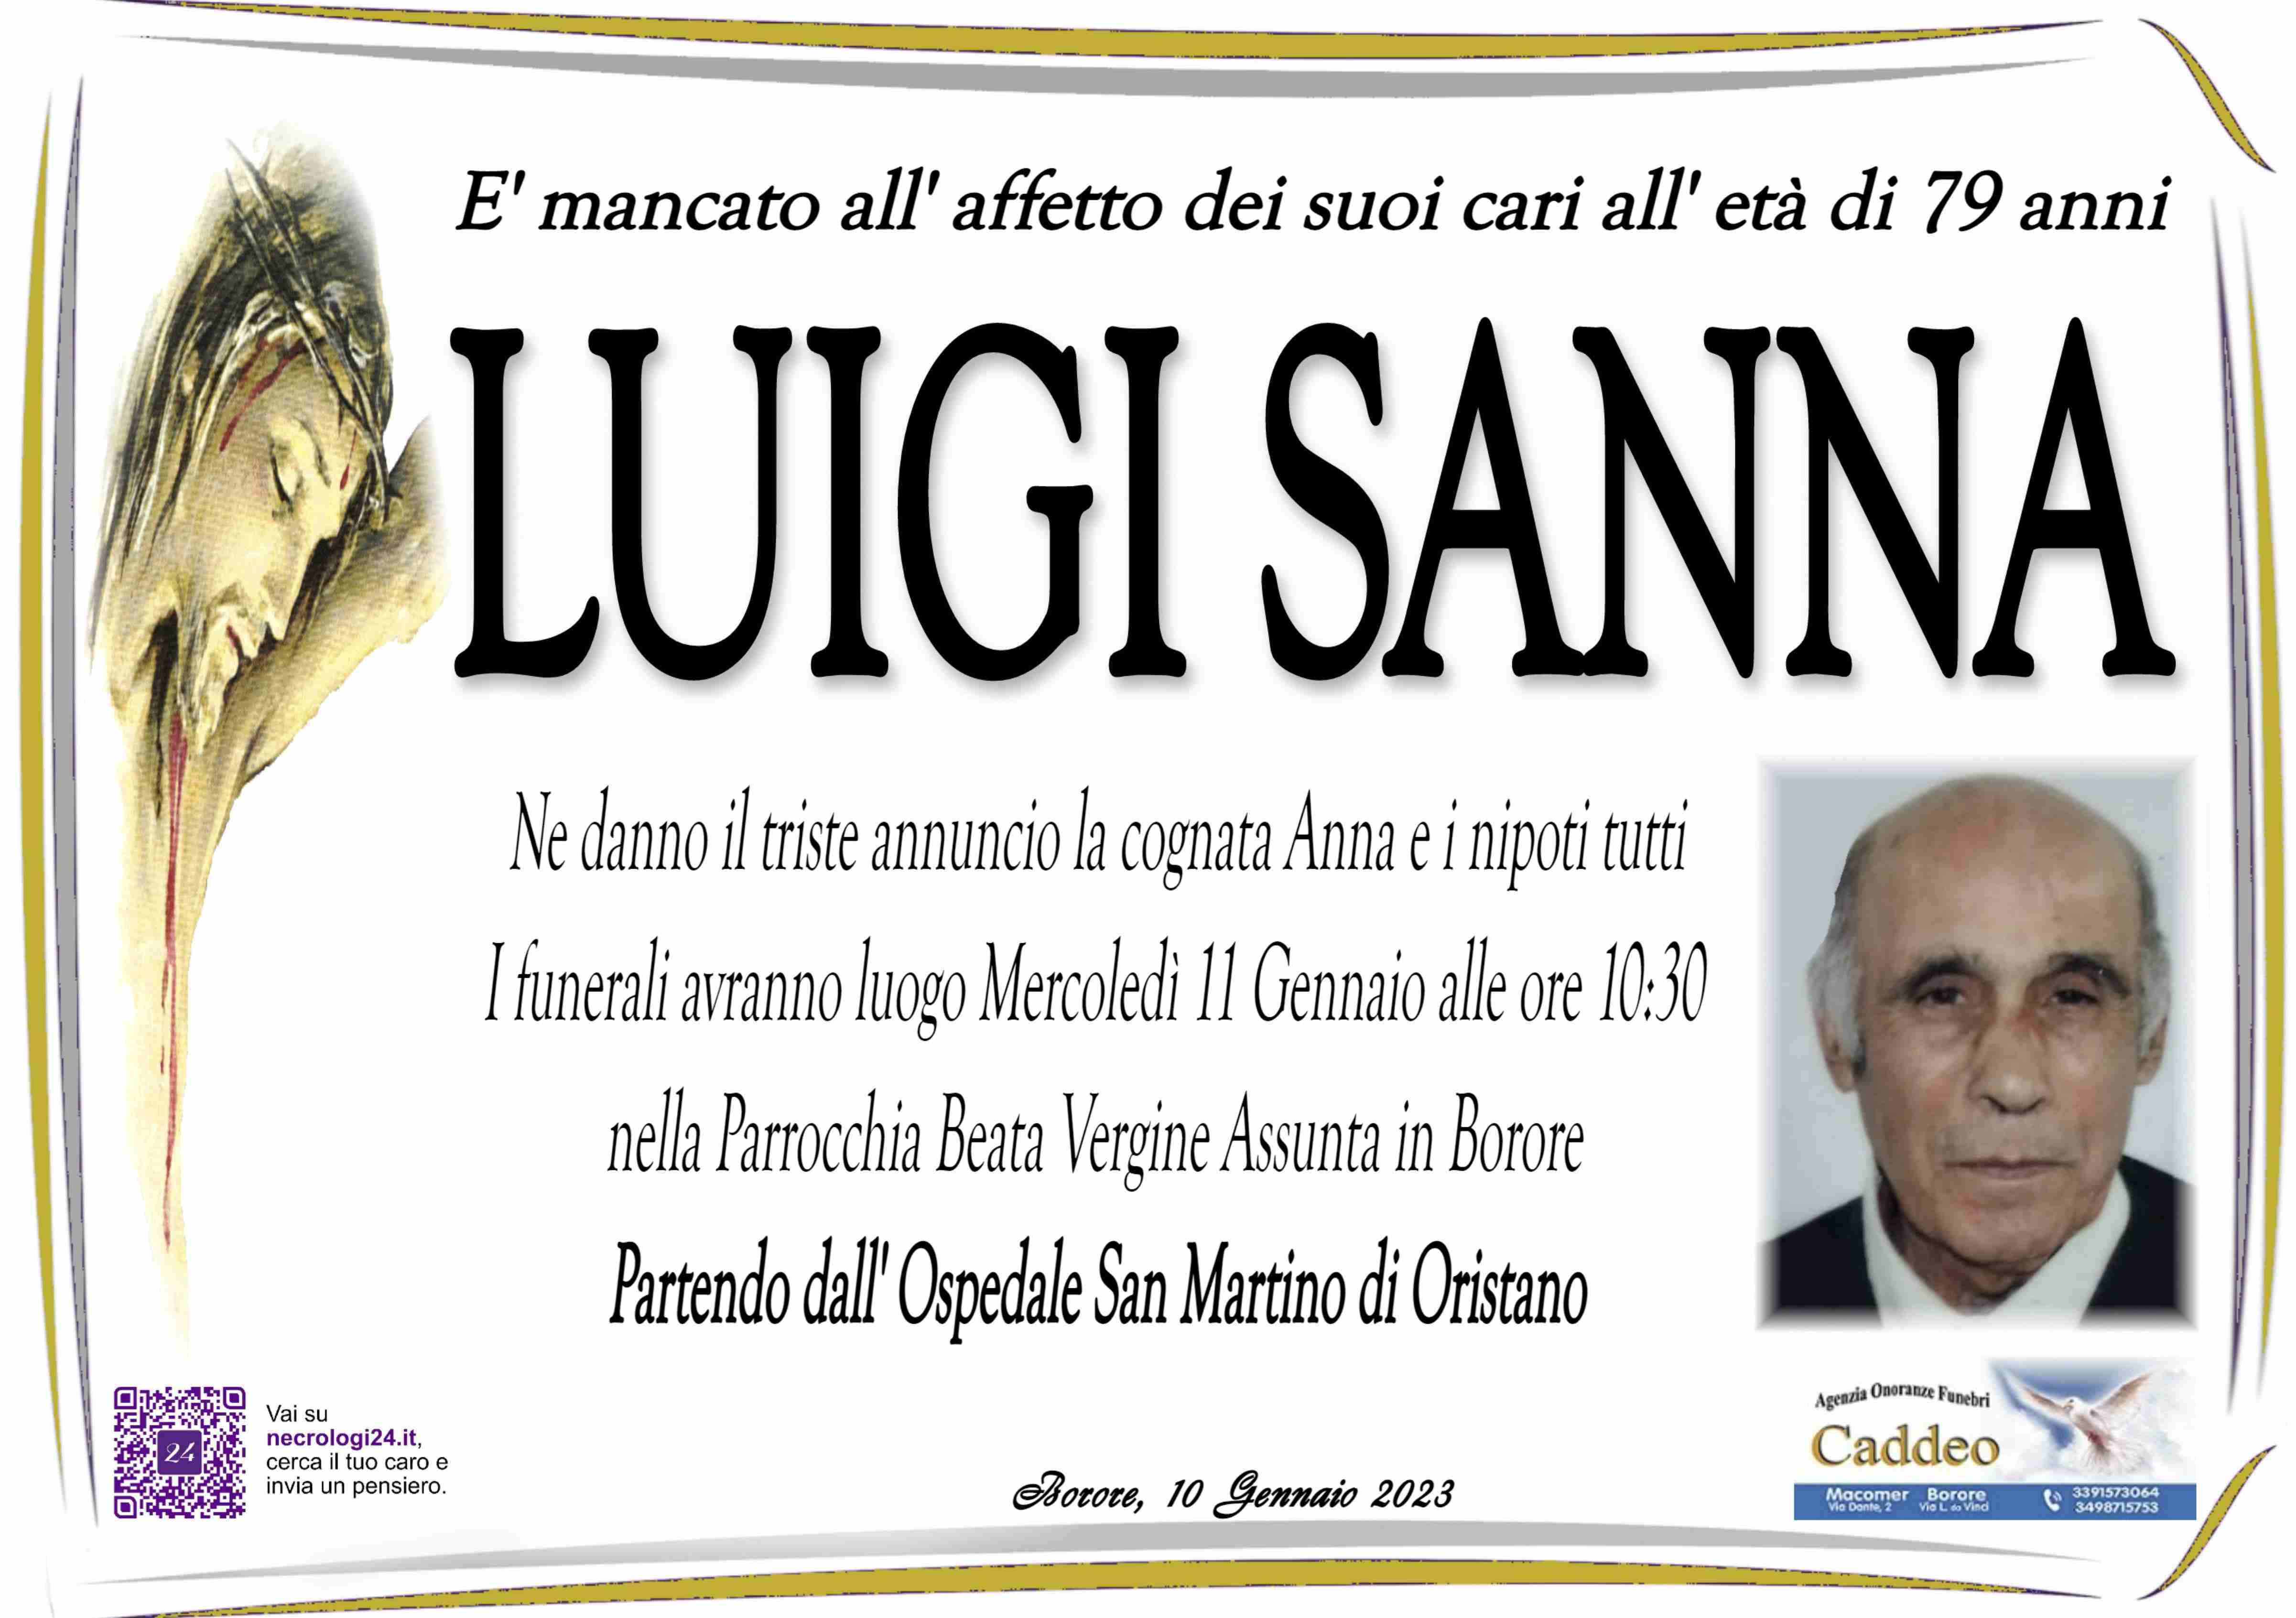 Luigi Sanna